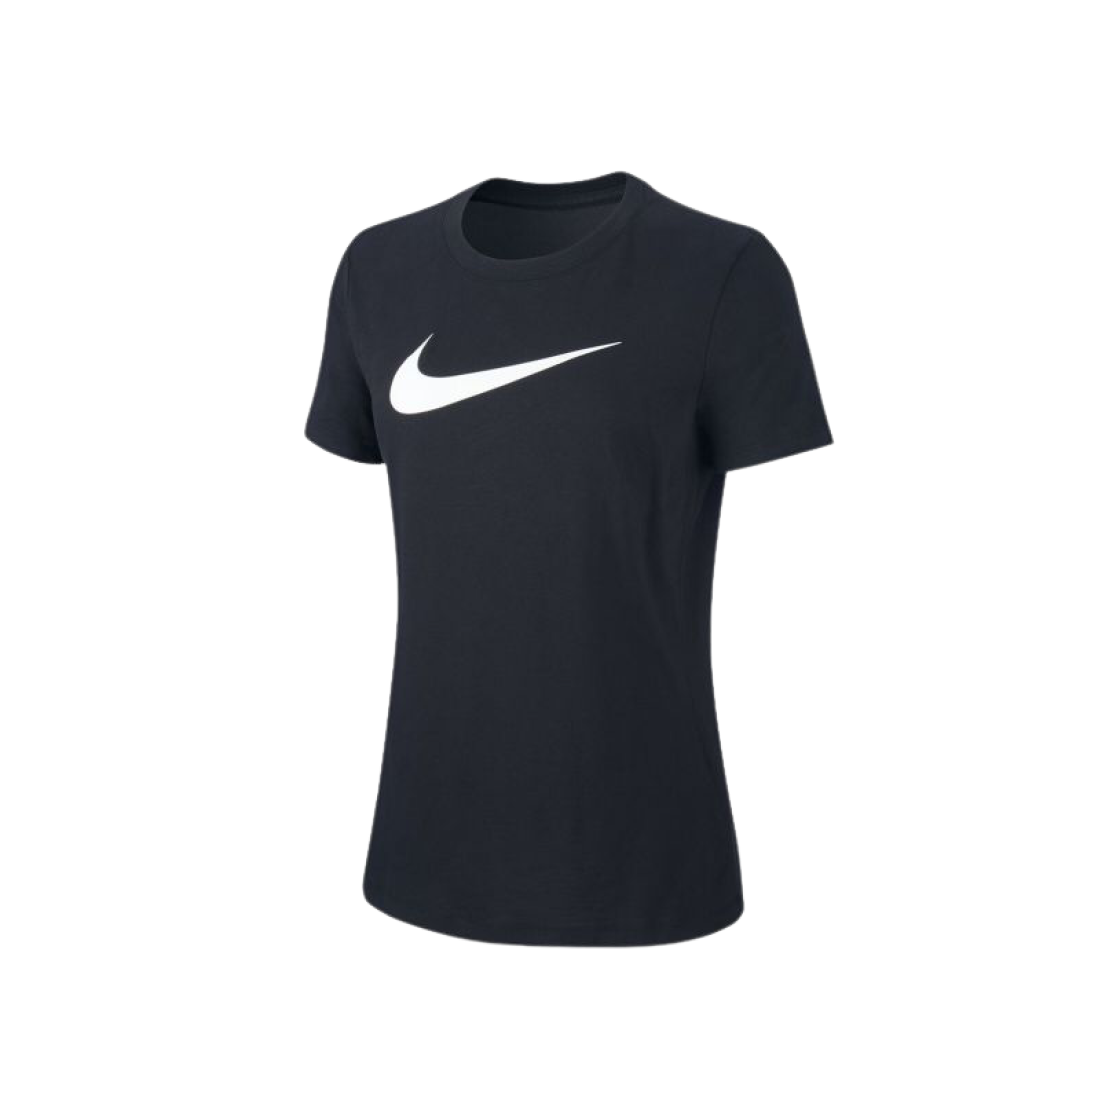 나이키 드라이핏 트레이닝 티셔츠 블랙 - US/EU 우먼스 AQ3212-011